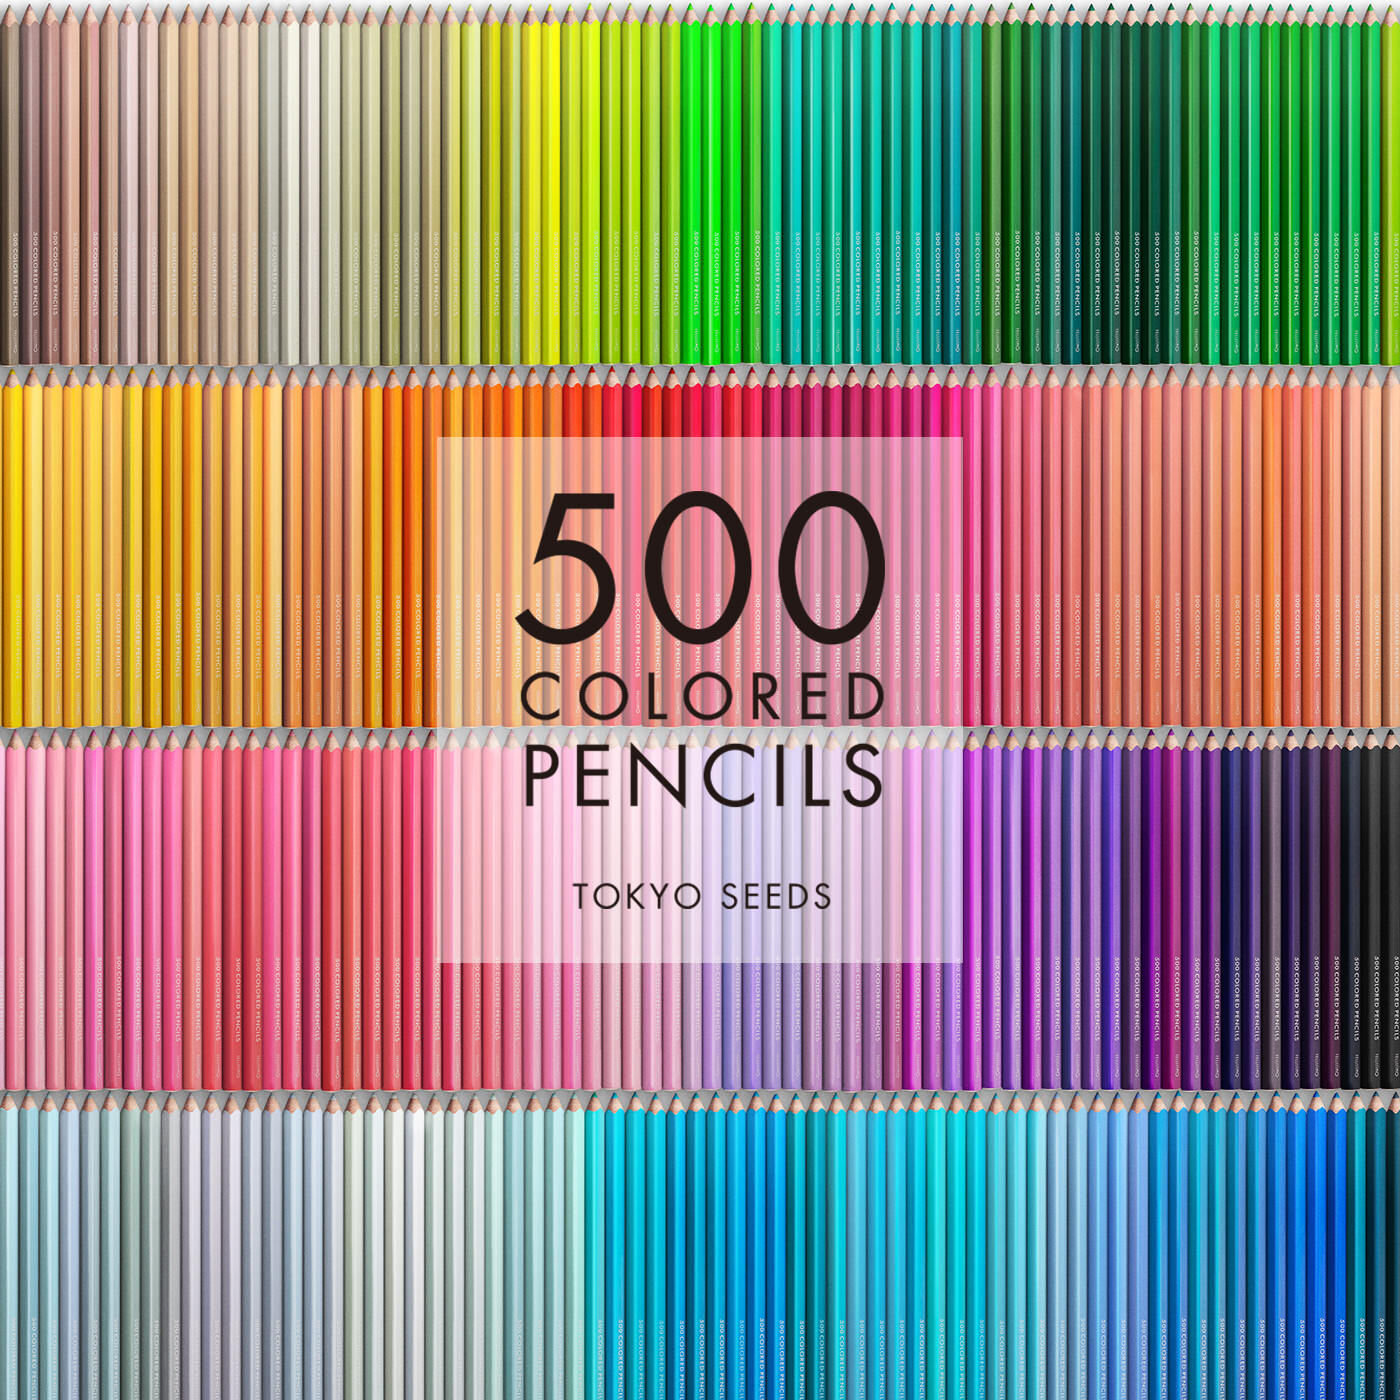 Real Stock|【44/500 BEACH WALK】500色の色えんぴつ TOKYO SEEDS|1992年、世界初の「500色」という膨大な色数の色えんぴつが誕生して以来、その販売数は発売当初から合わせると、世界55ヵ国10万セット以上。今回、メイド・イン・ジャパンにこだわり、すべてが新しく生まれ変わって登場しました。